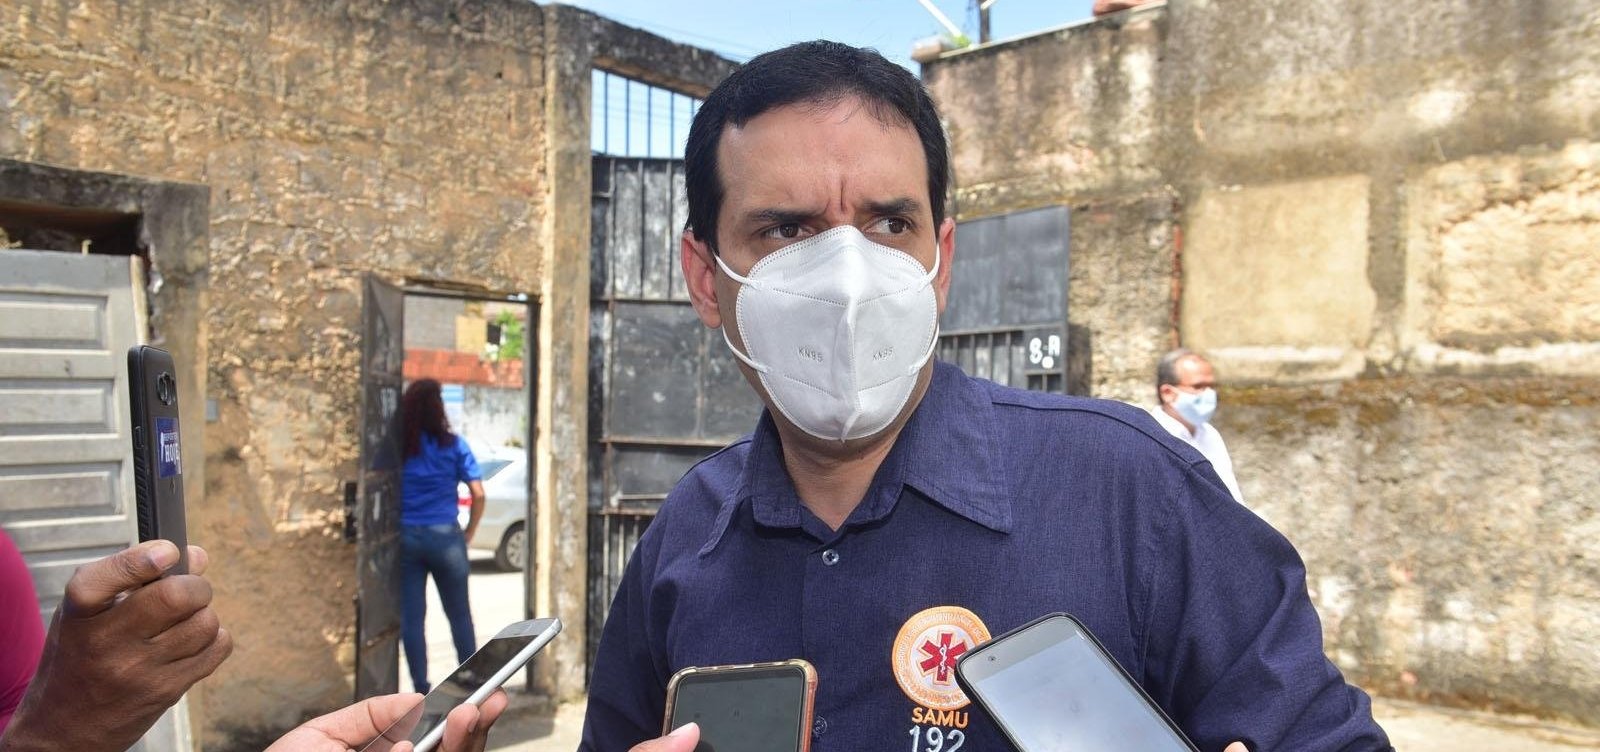 Prates rebate fala sobre 'pós-pandemia' e diz que Salvador mantém estado de alerta